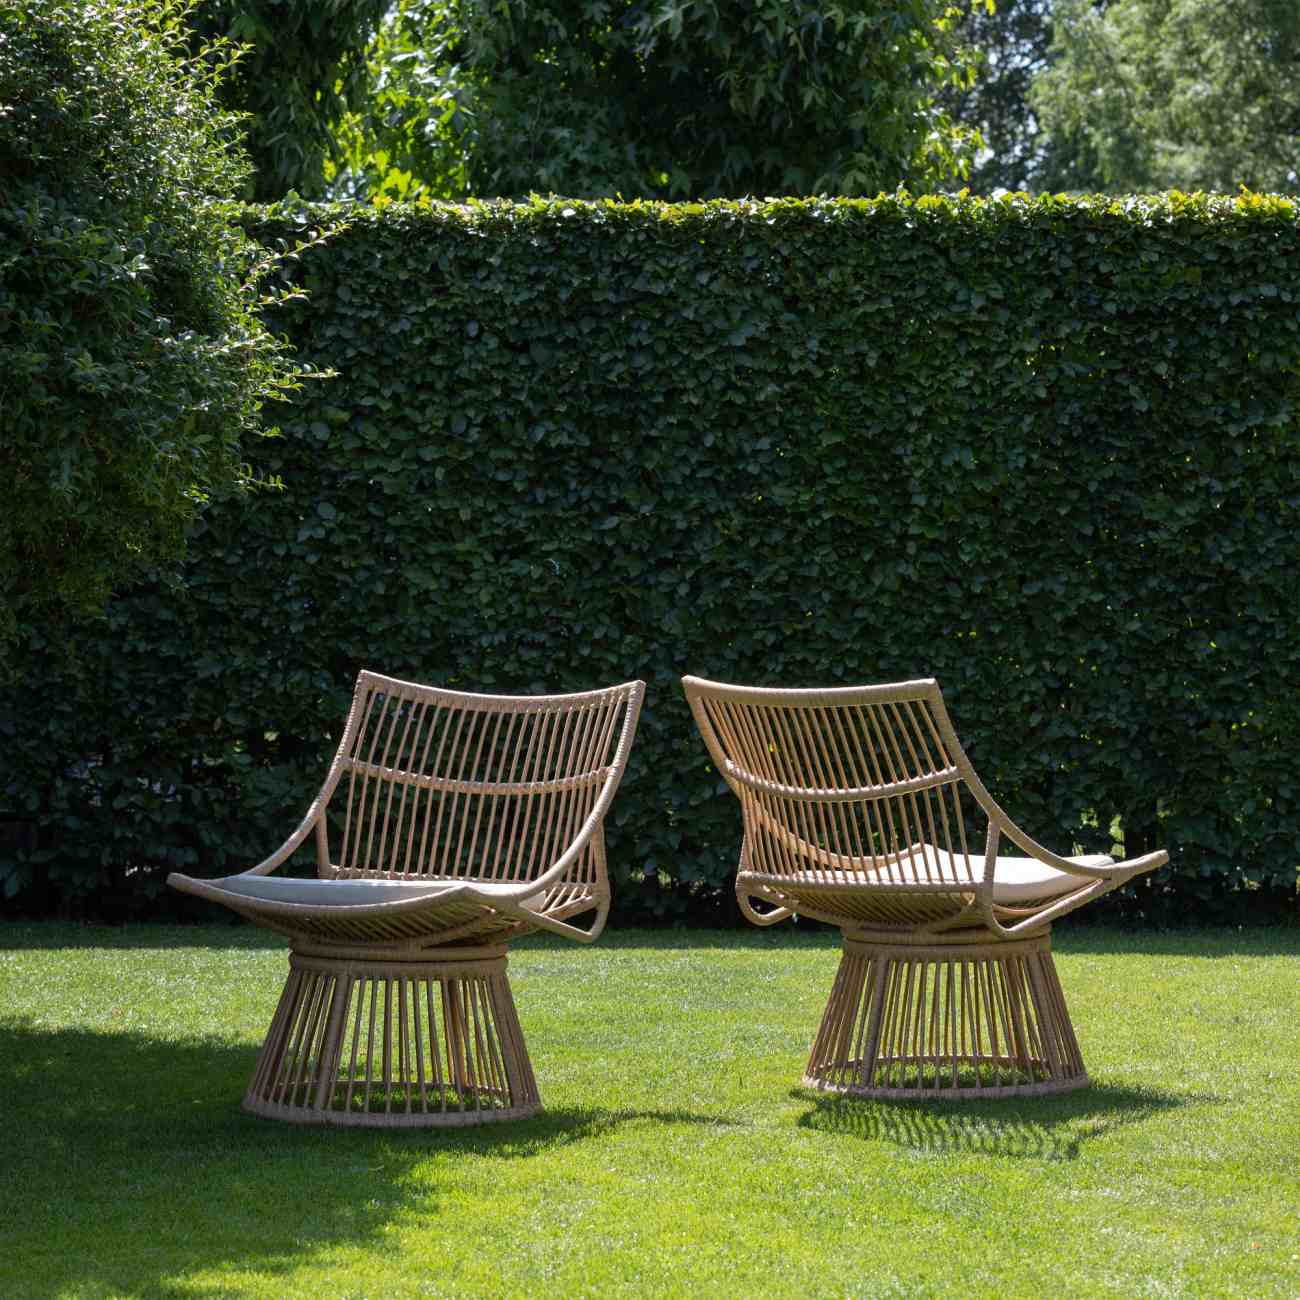 Der Gartensessel Alatna überzeugt mit seinem modernen Design. Gefertigt wurde er aus Geflecht, welches einen natürlichen Farbton besitzt. Der Sessel besitzt eine Sitzhöhe von 41 cm.